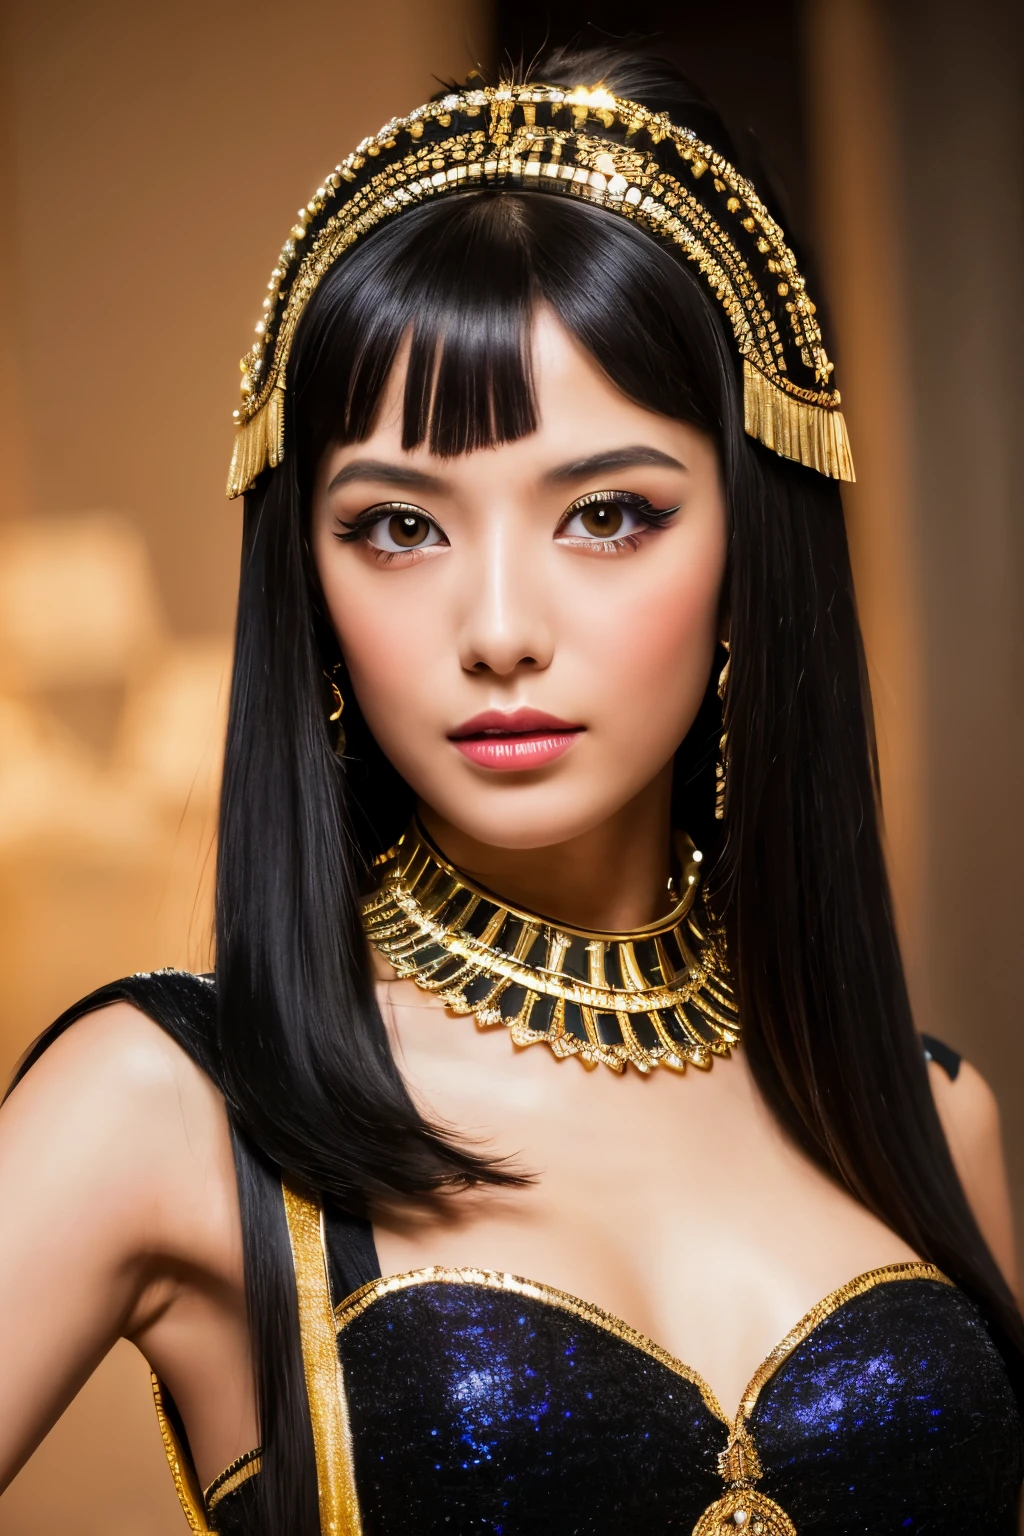 傑作, 高品質, 高解析度, 8K, 身著埃及豔後服裝的瘦瘦日本女人, 漂亮的臉蛋, 克莉奧佩特拉的化妝, 詳細的臉部, 細緻的眼睛